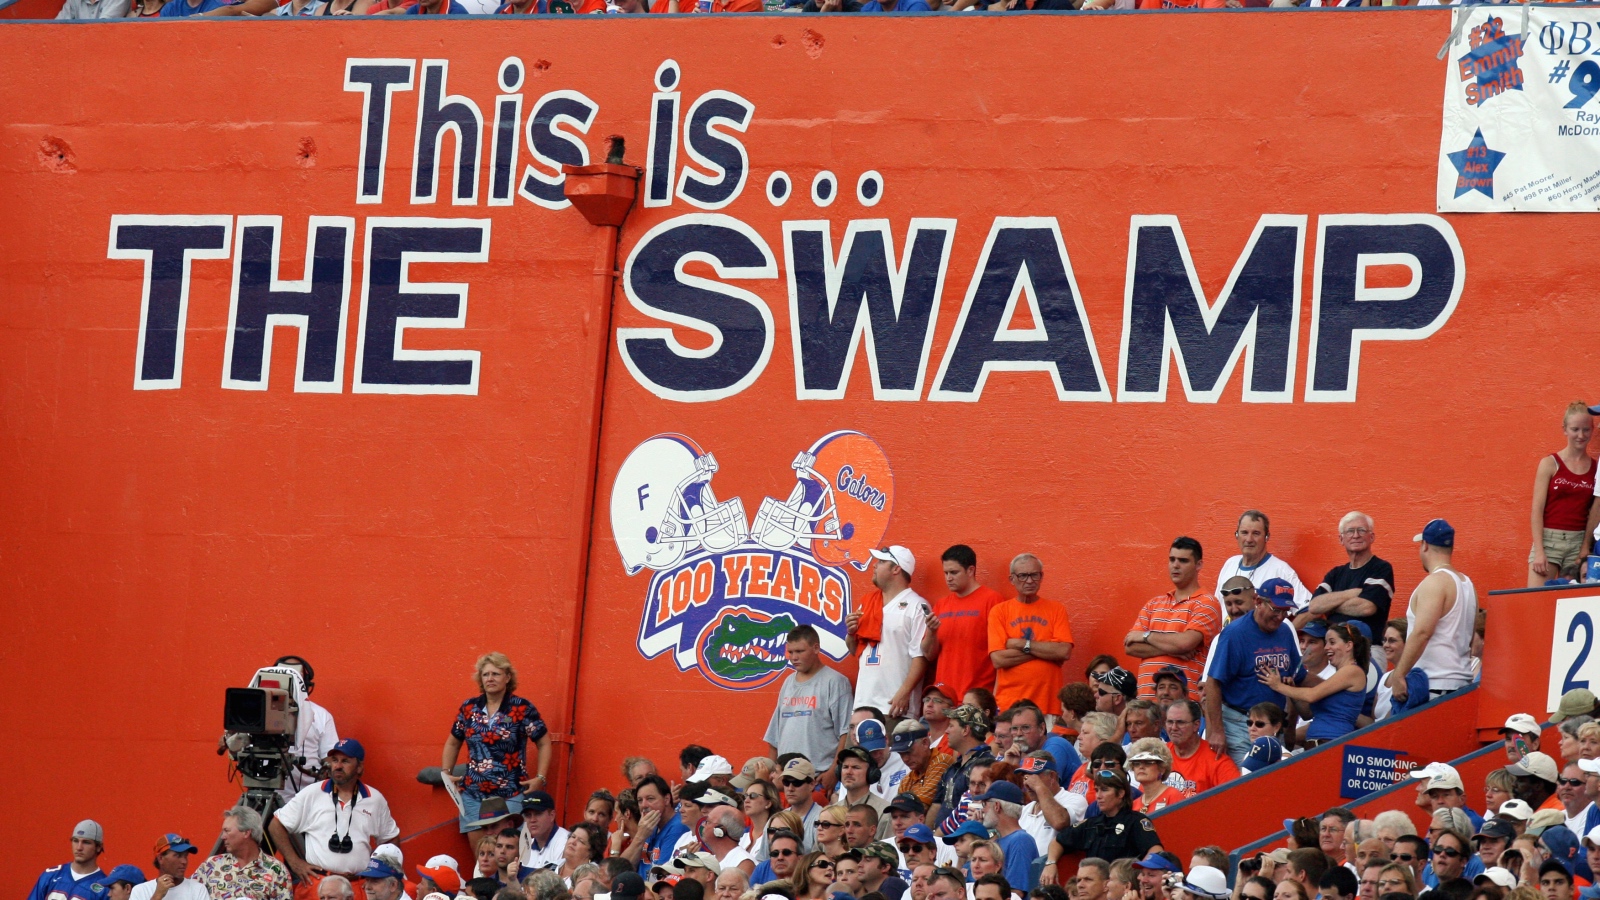 Florida Gators stadium the Swamp